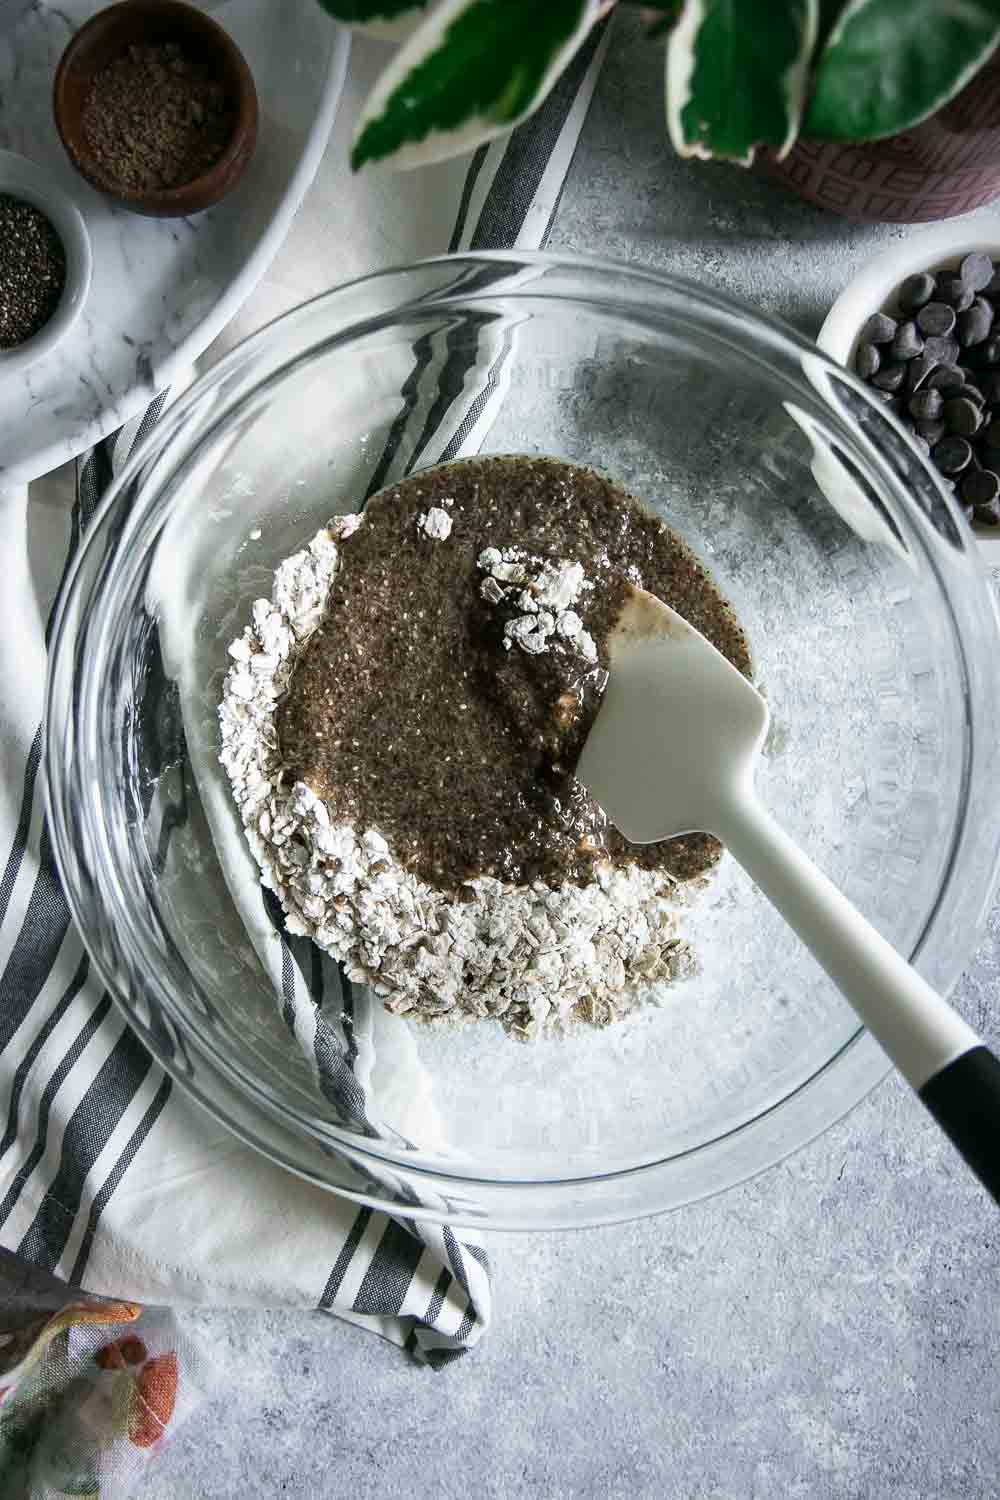 一个玻璃碗用干燥和湿燕麦粥巧克力曲奇饼和混合的匙子在一张灰色桌上